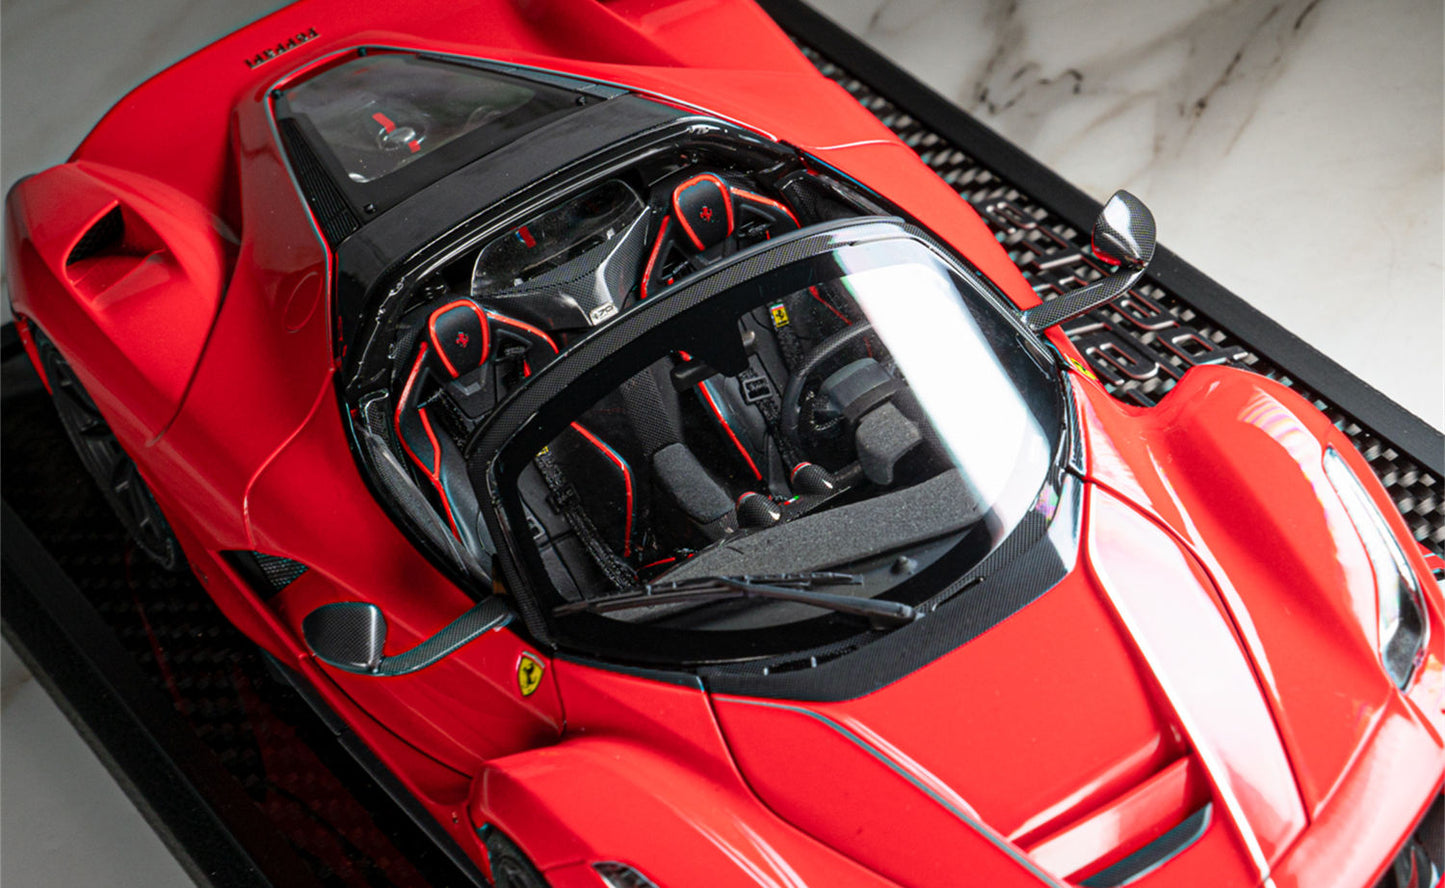 Ferrari Laferrari Aperta Red 1:18 Scale Diecast Model Car